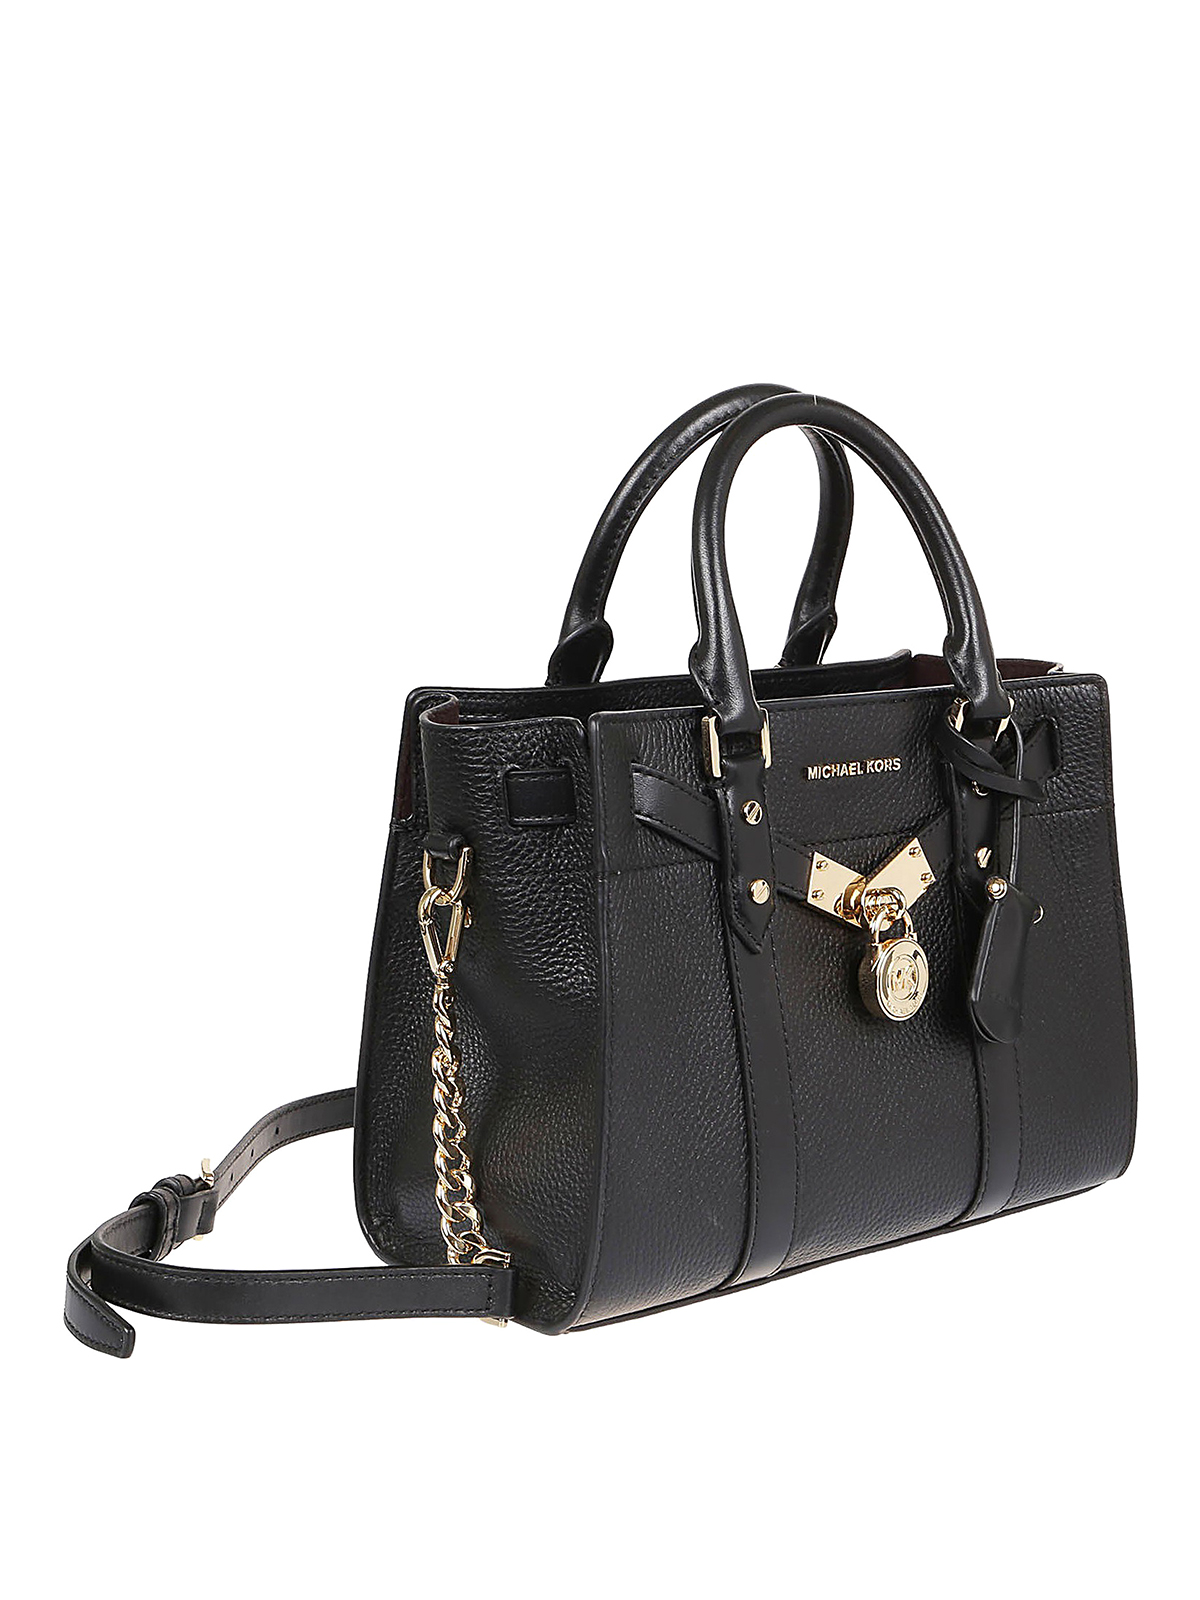 Michael Kors Nouveau Hamilton Ladies Small Black Leather Tote Bag ...